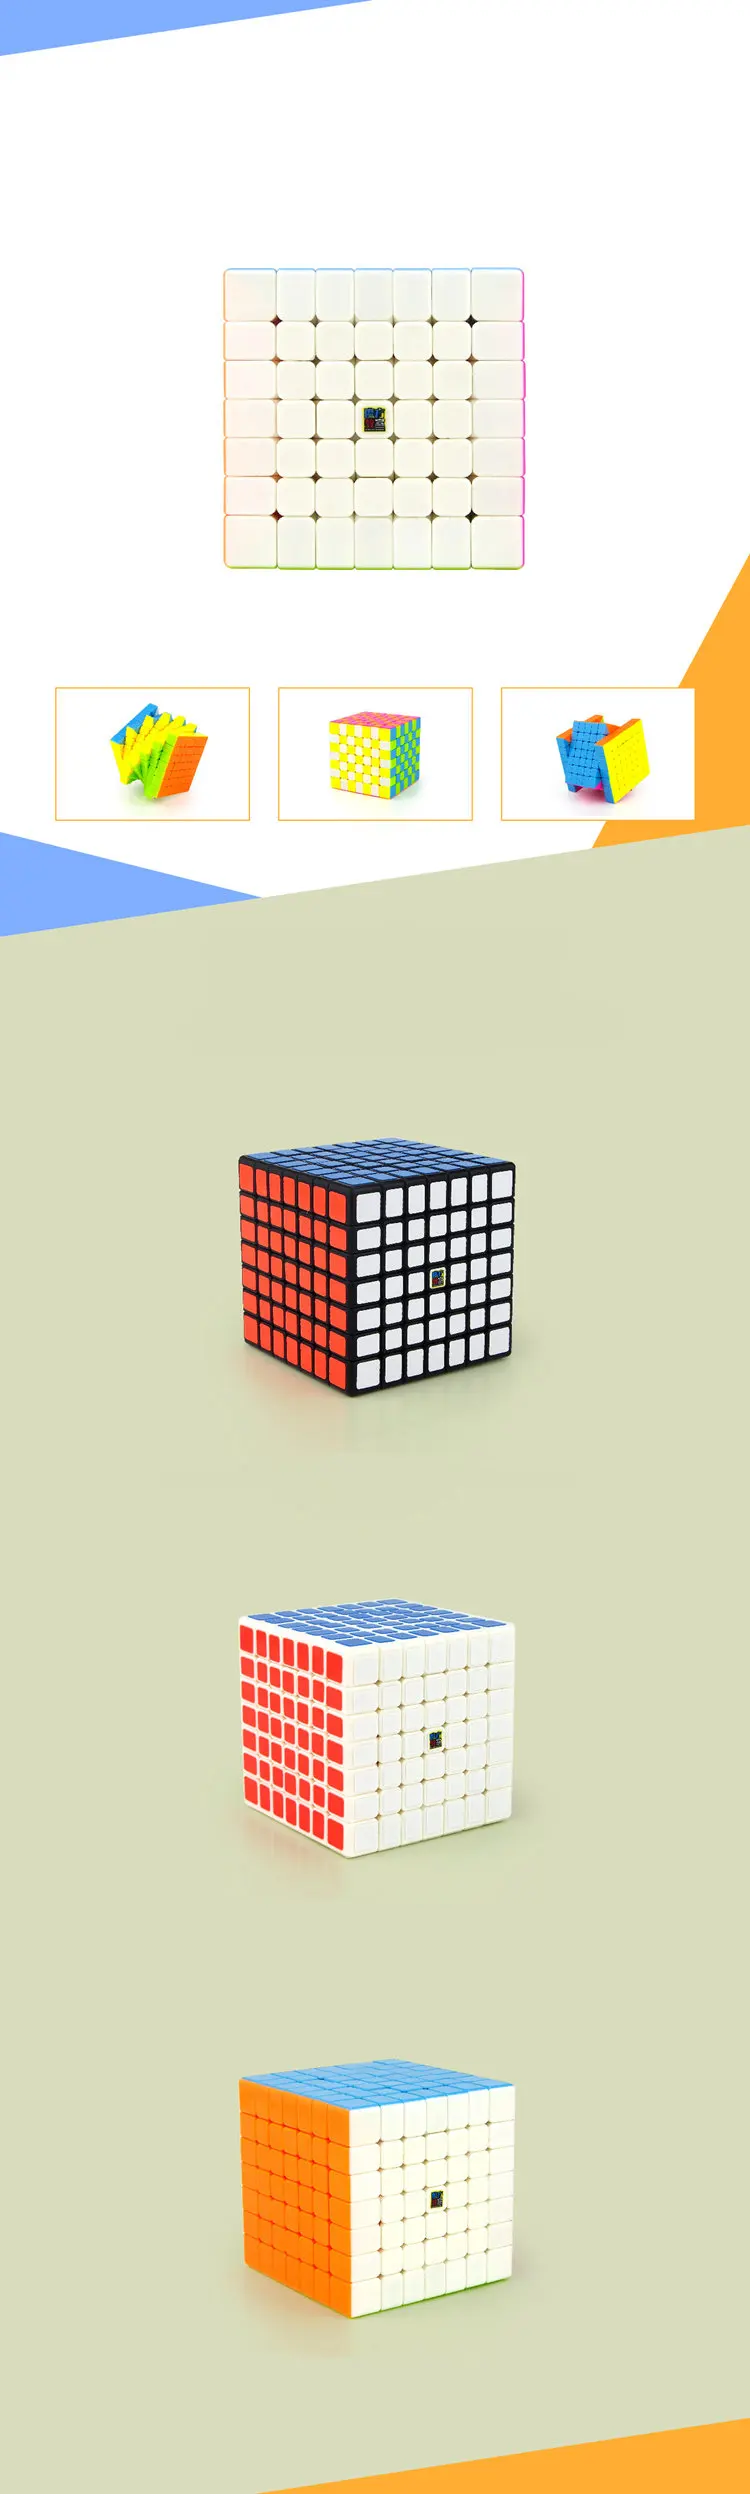 Moyu Meilong 7x7x7 волшебный куб класс ML7 волшебный куб 7 слой s куб Семь слоев черный куб пазл игрушки для детей